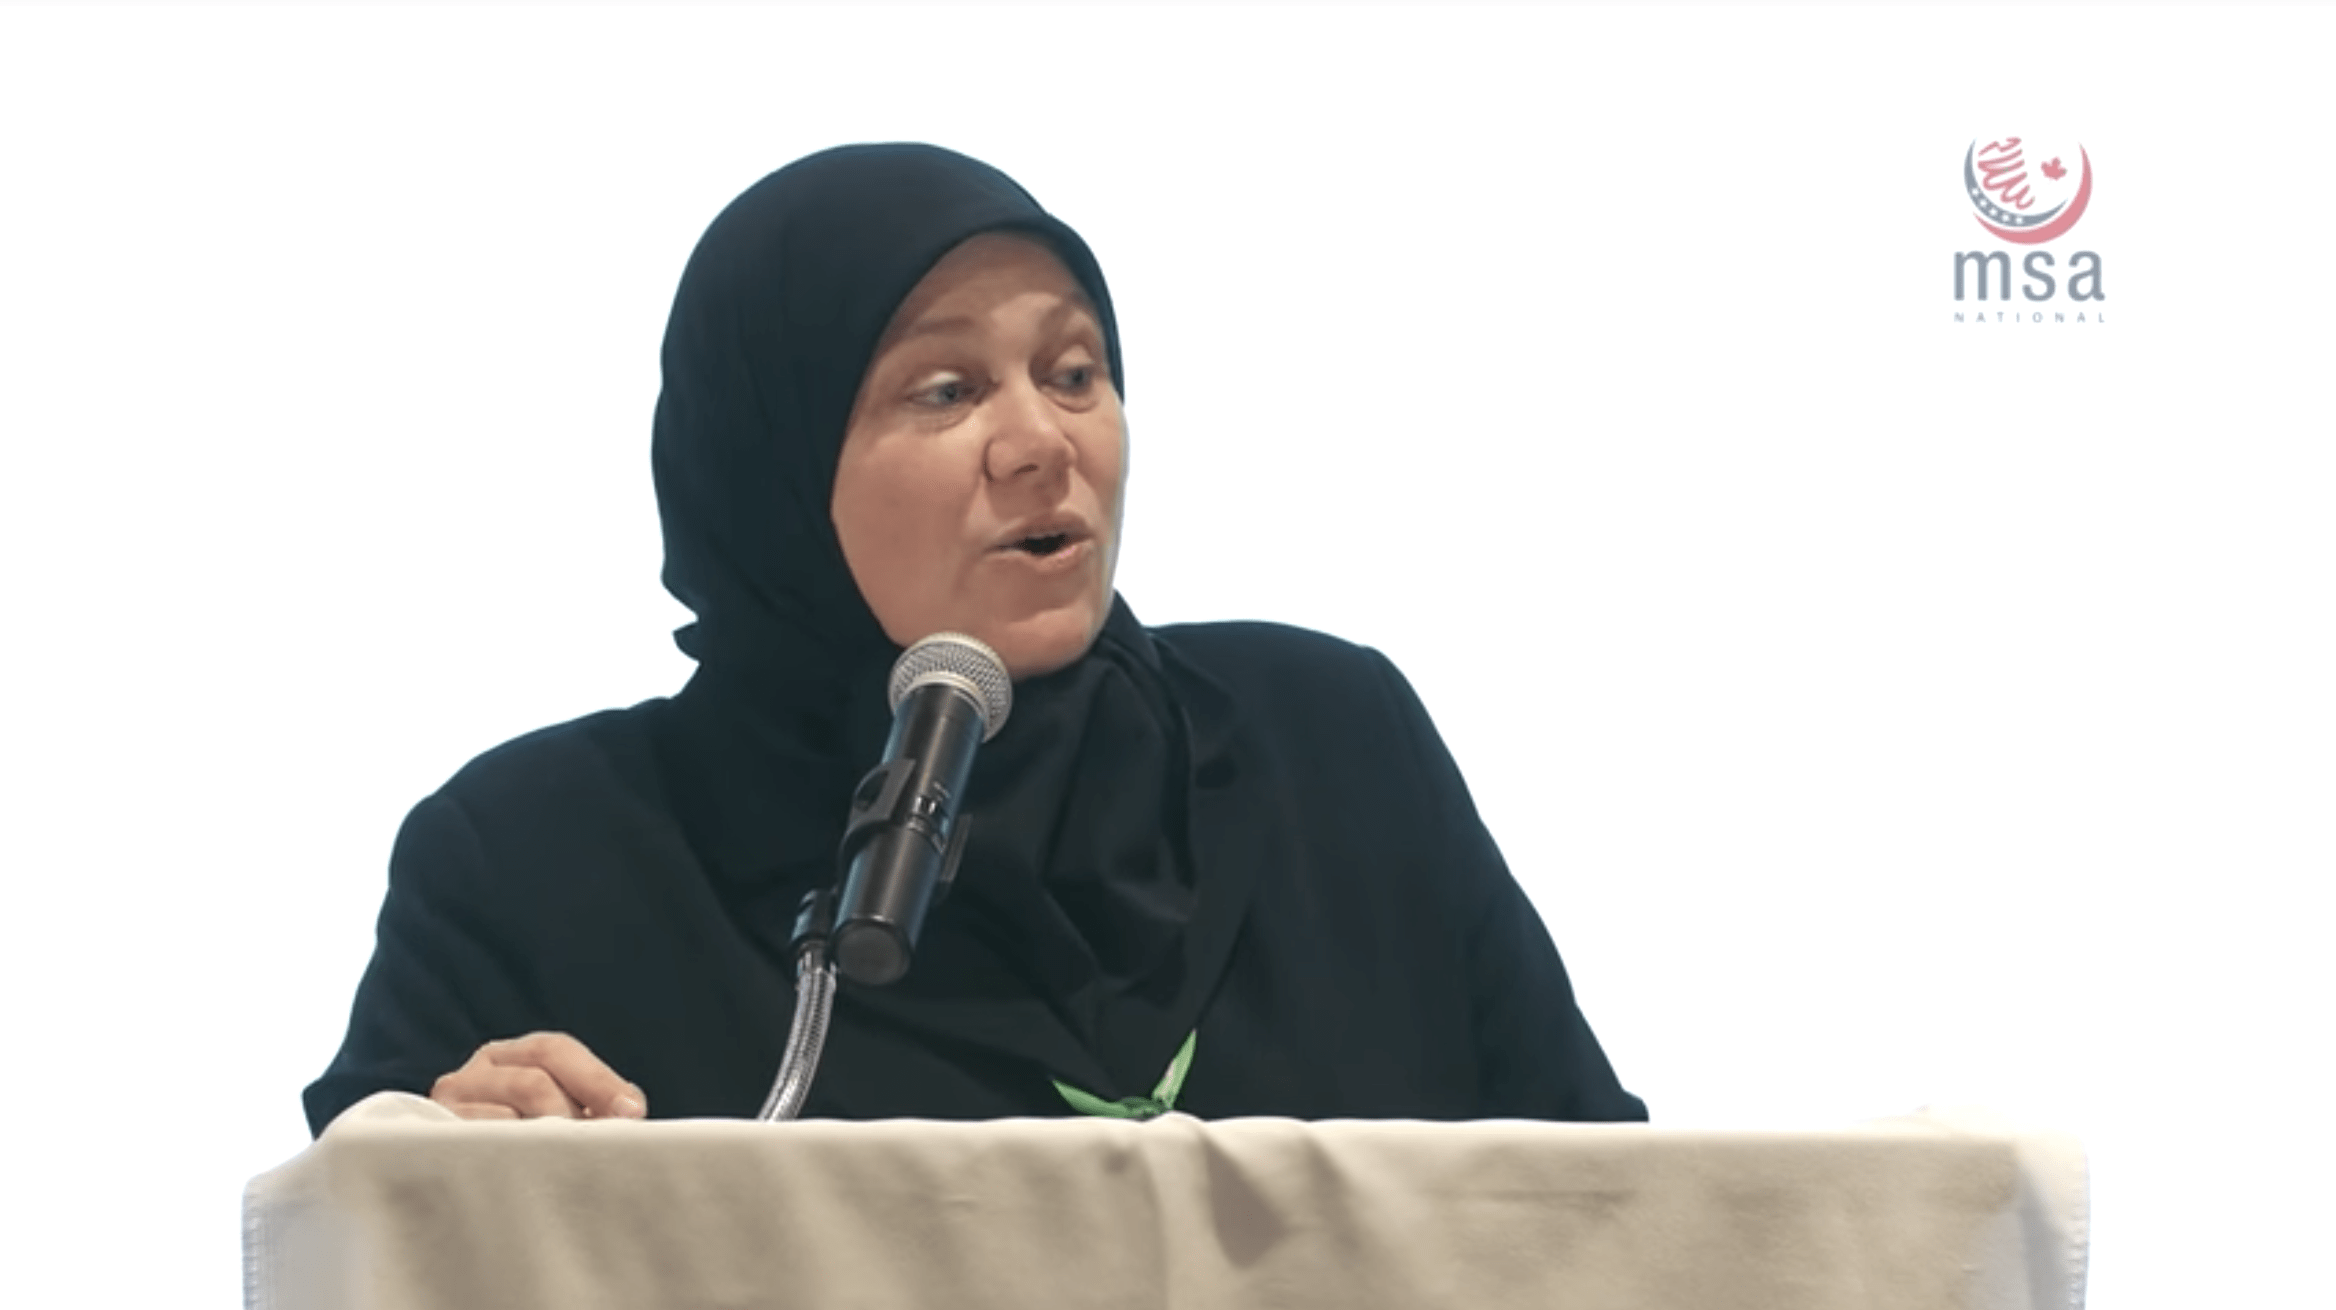 Tamara Gray – Choosing Islam